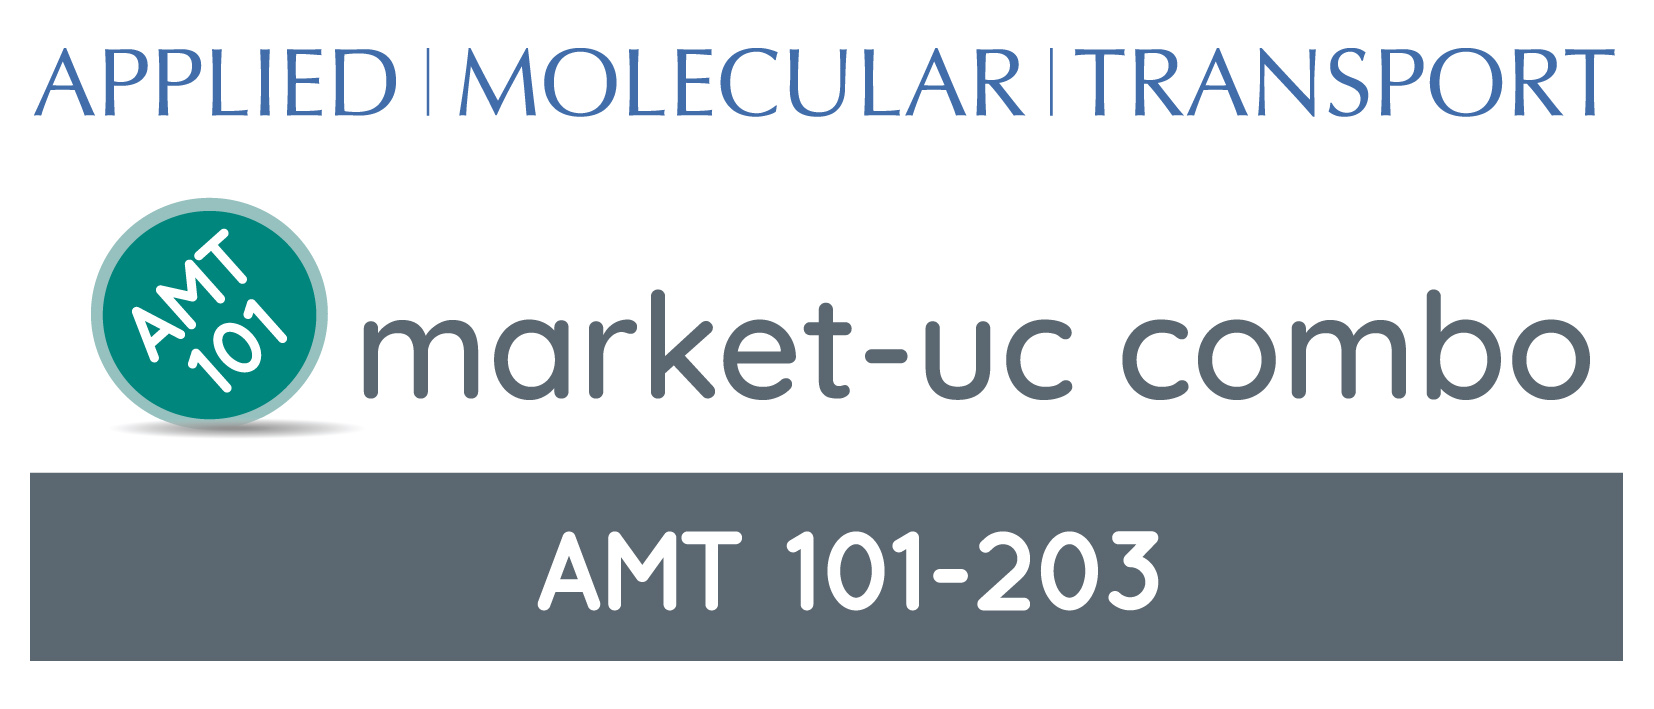 AMT Market-UC_April 21, 2021